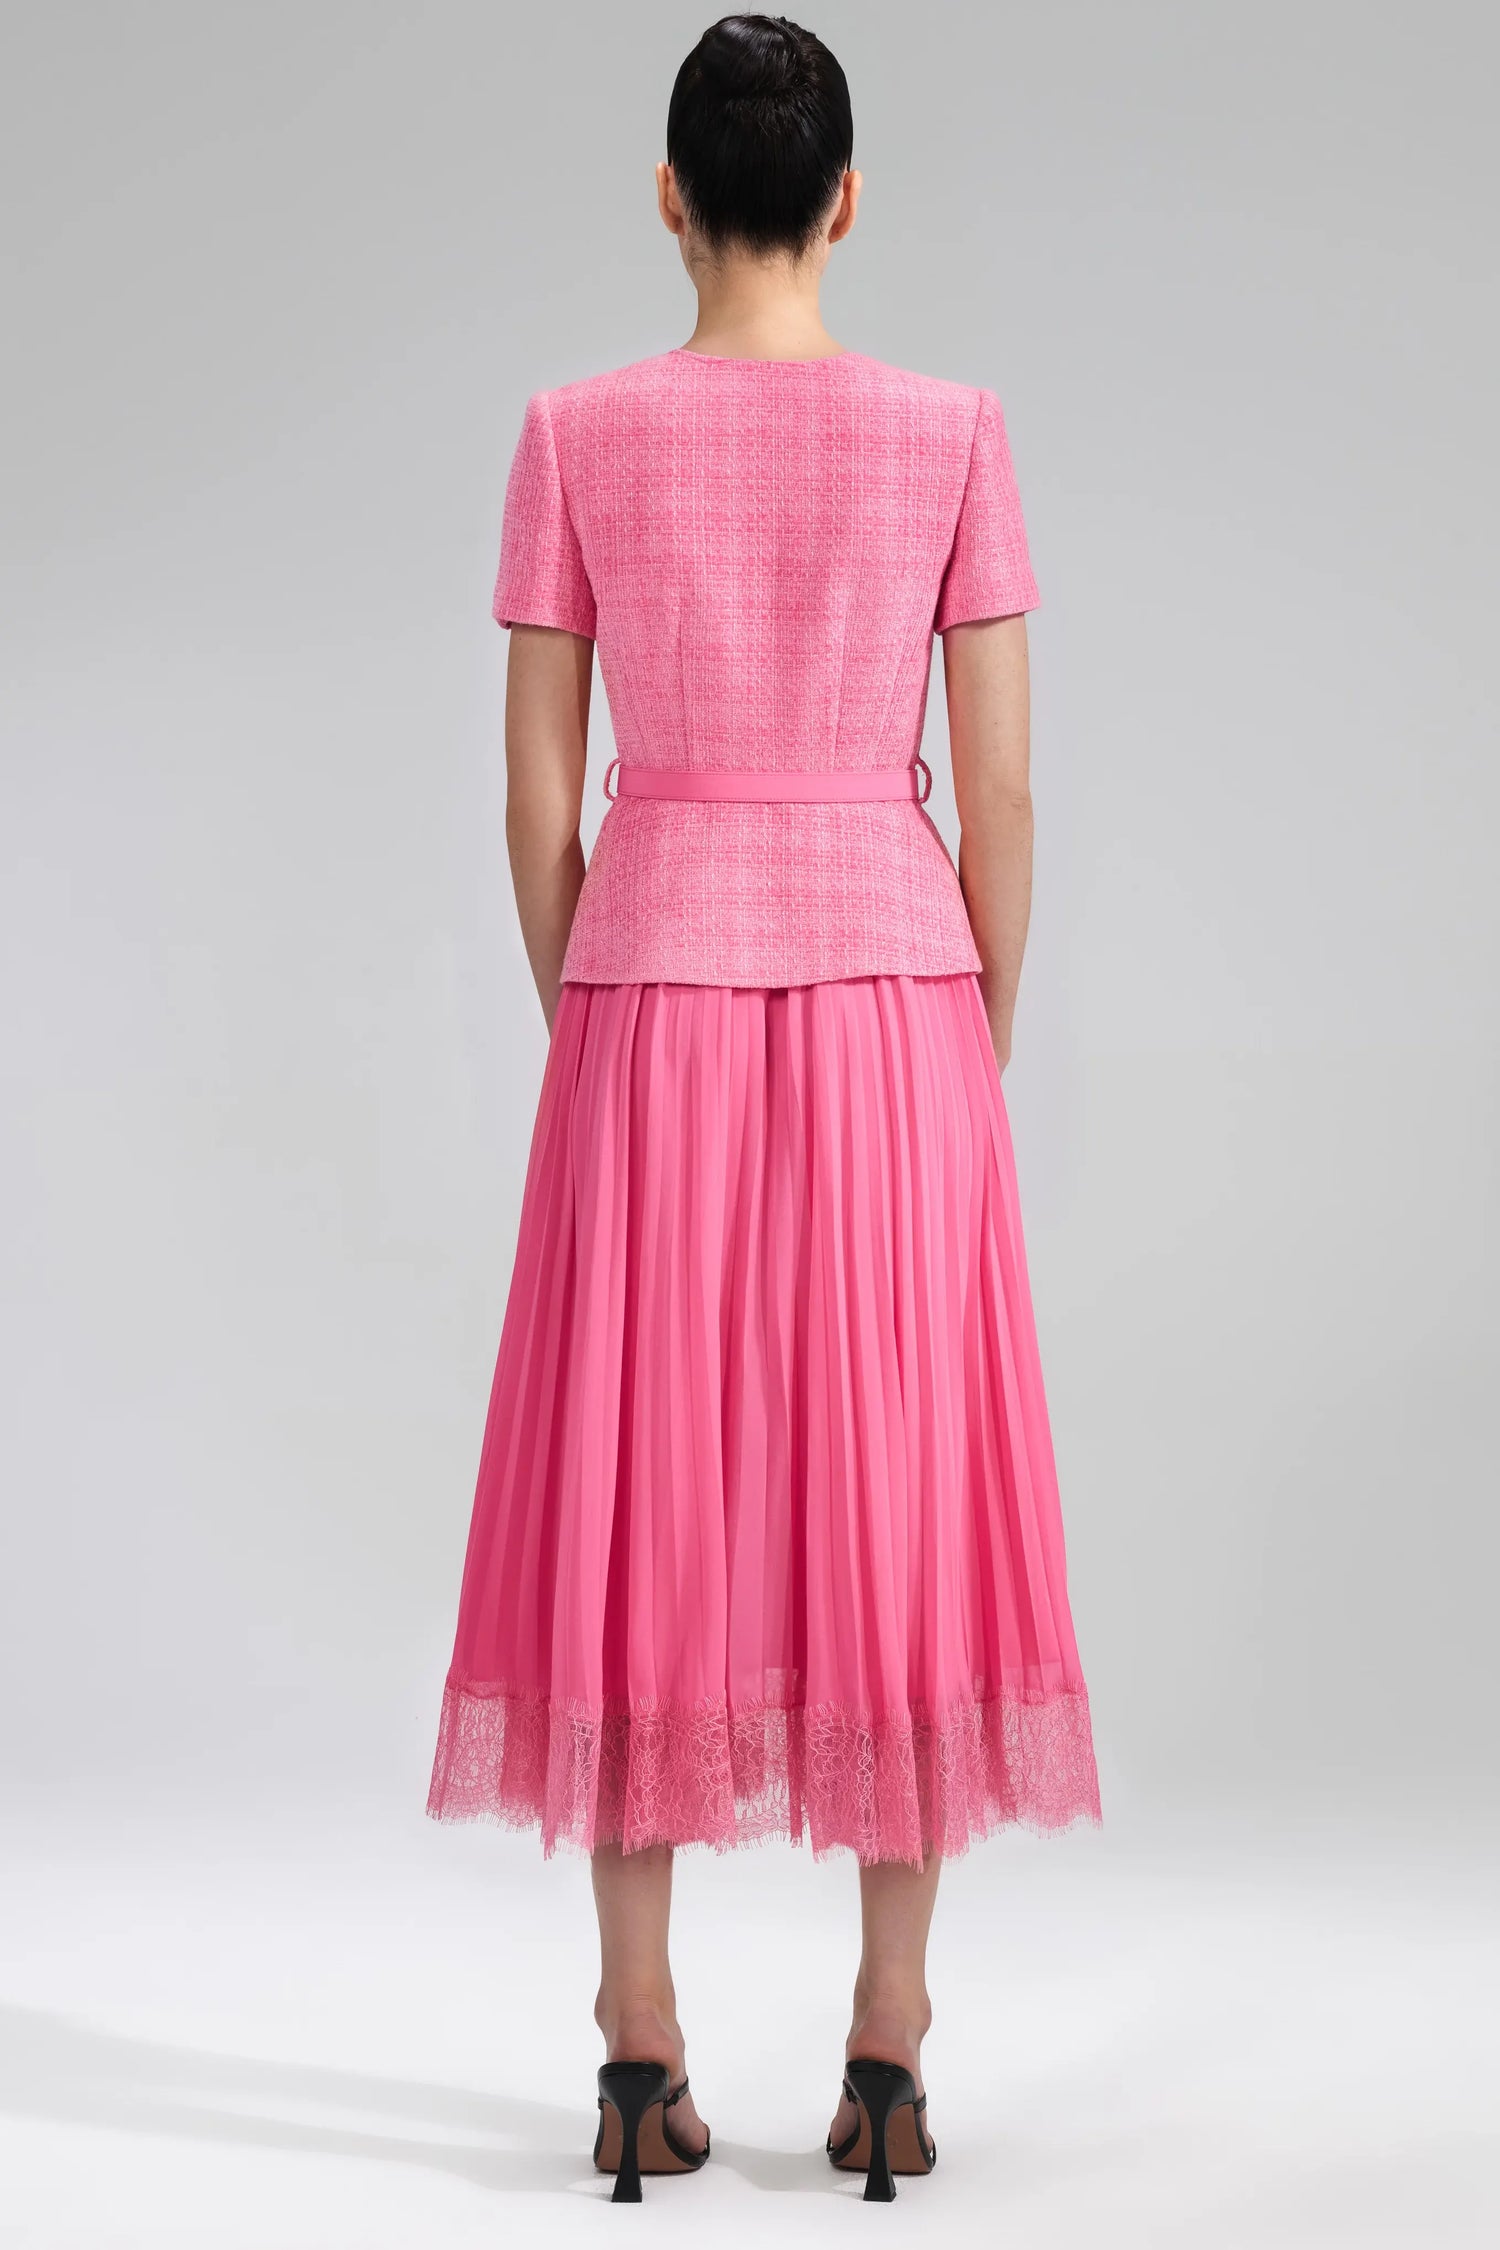 Boucle chiffon midi dress, pink